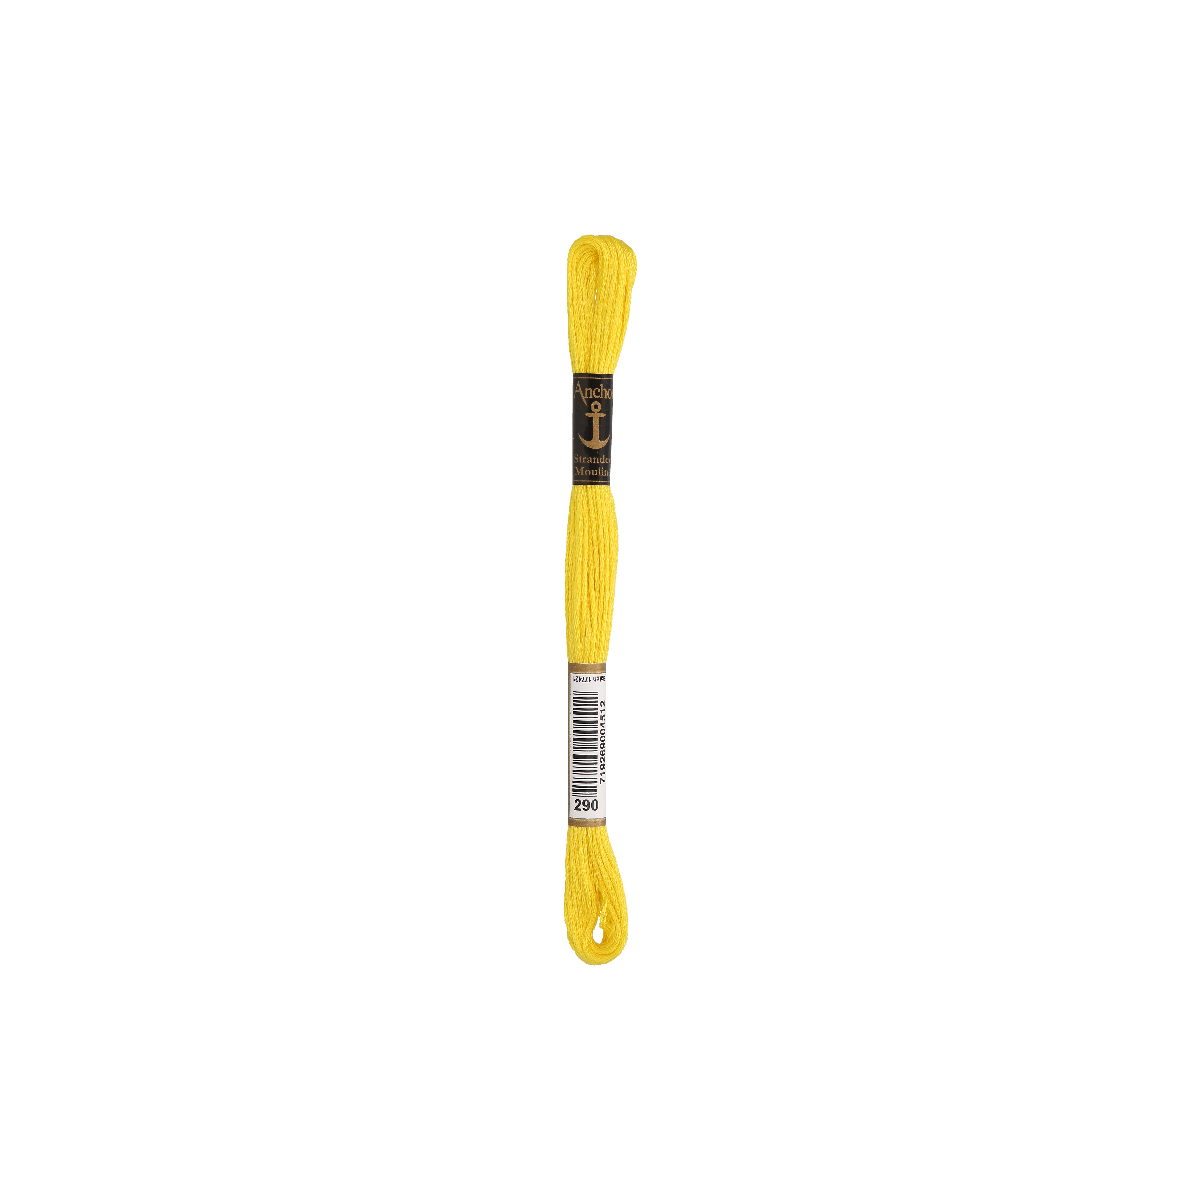 Anchor Sticktwist 8m, giallo, cotone, colore 290, 6 fili